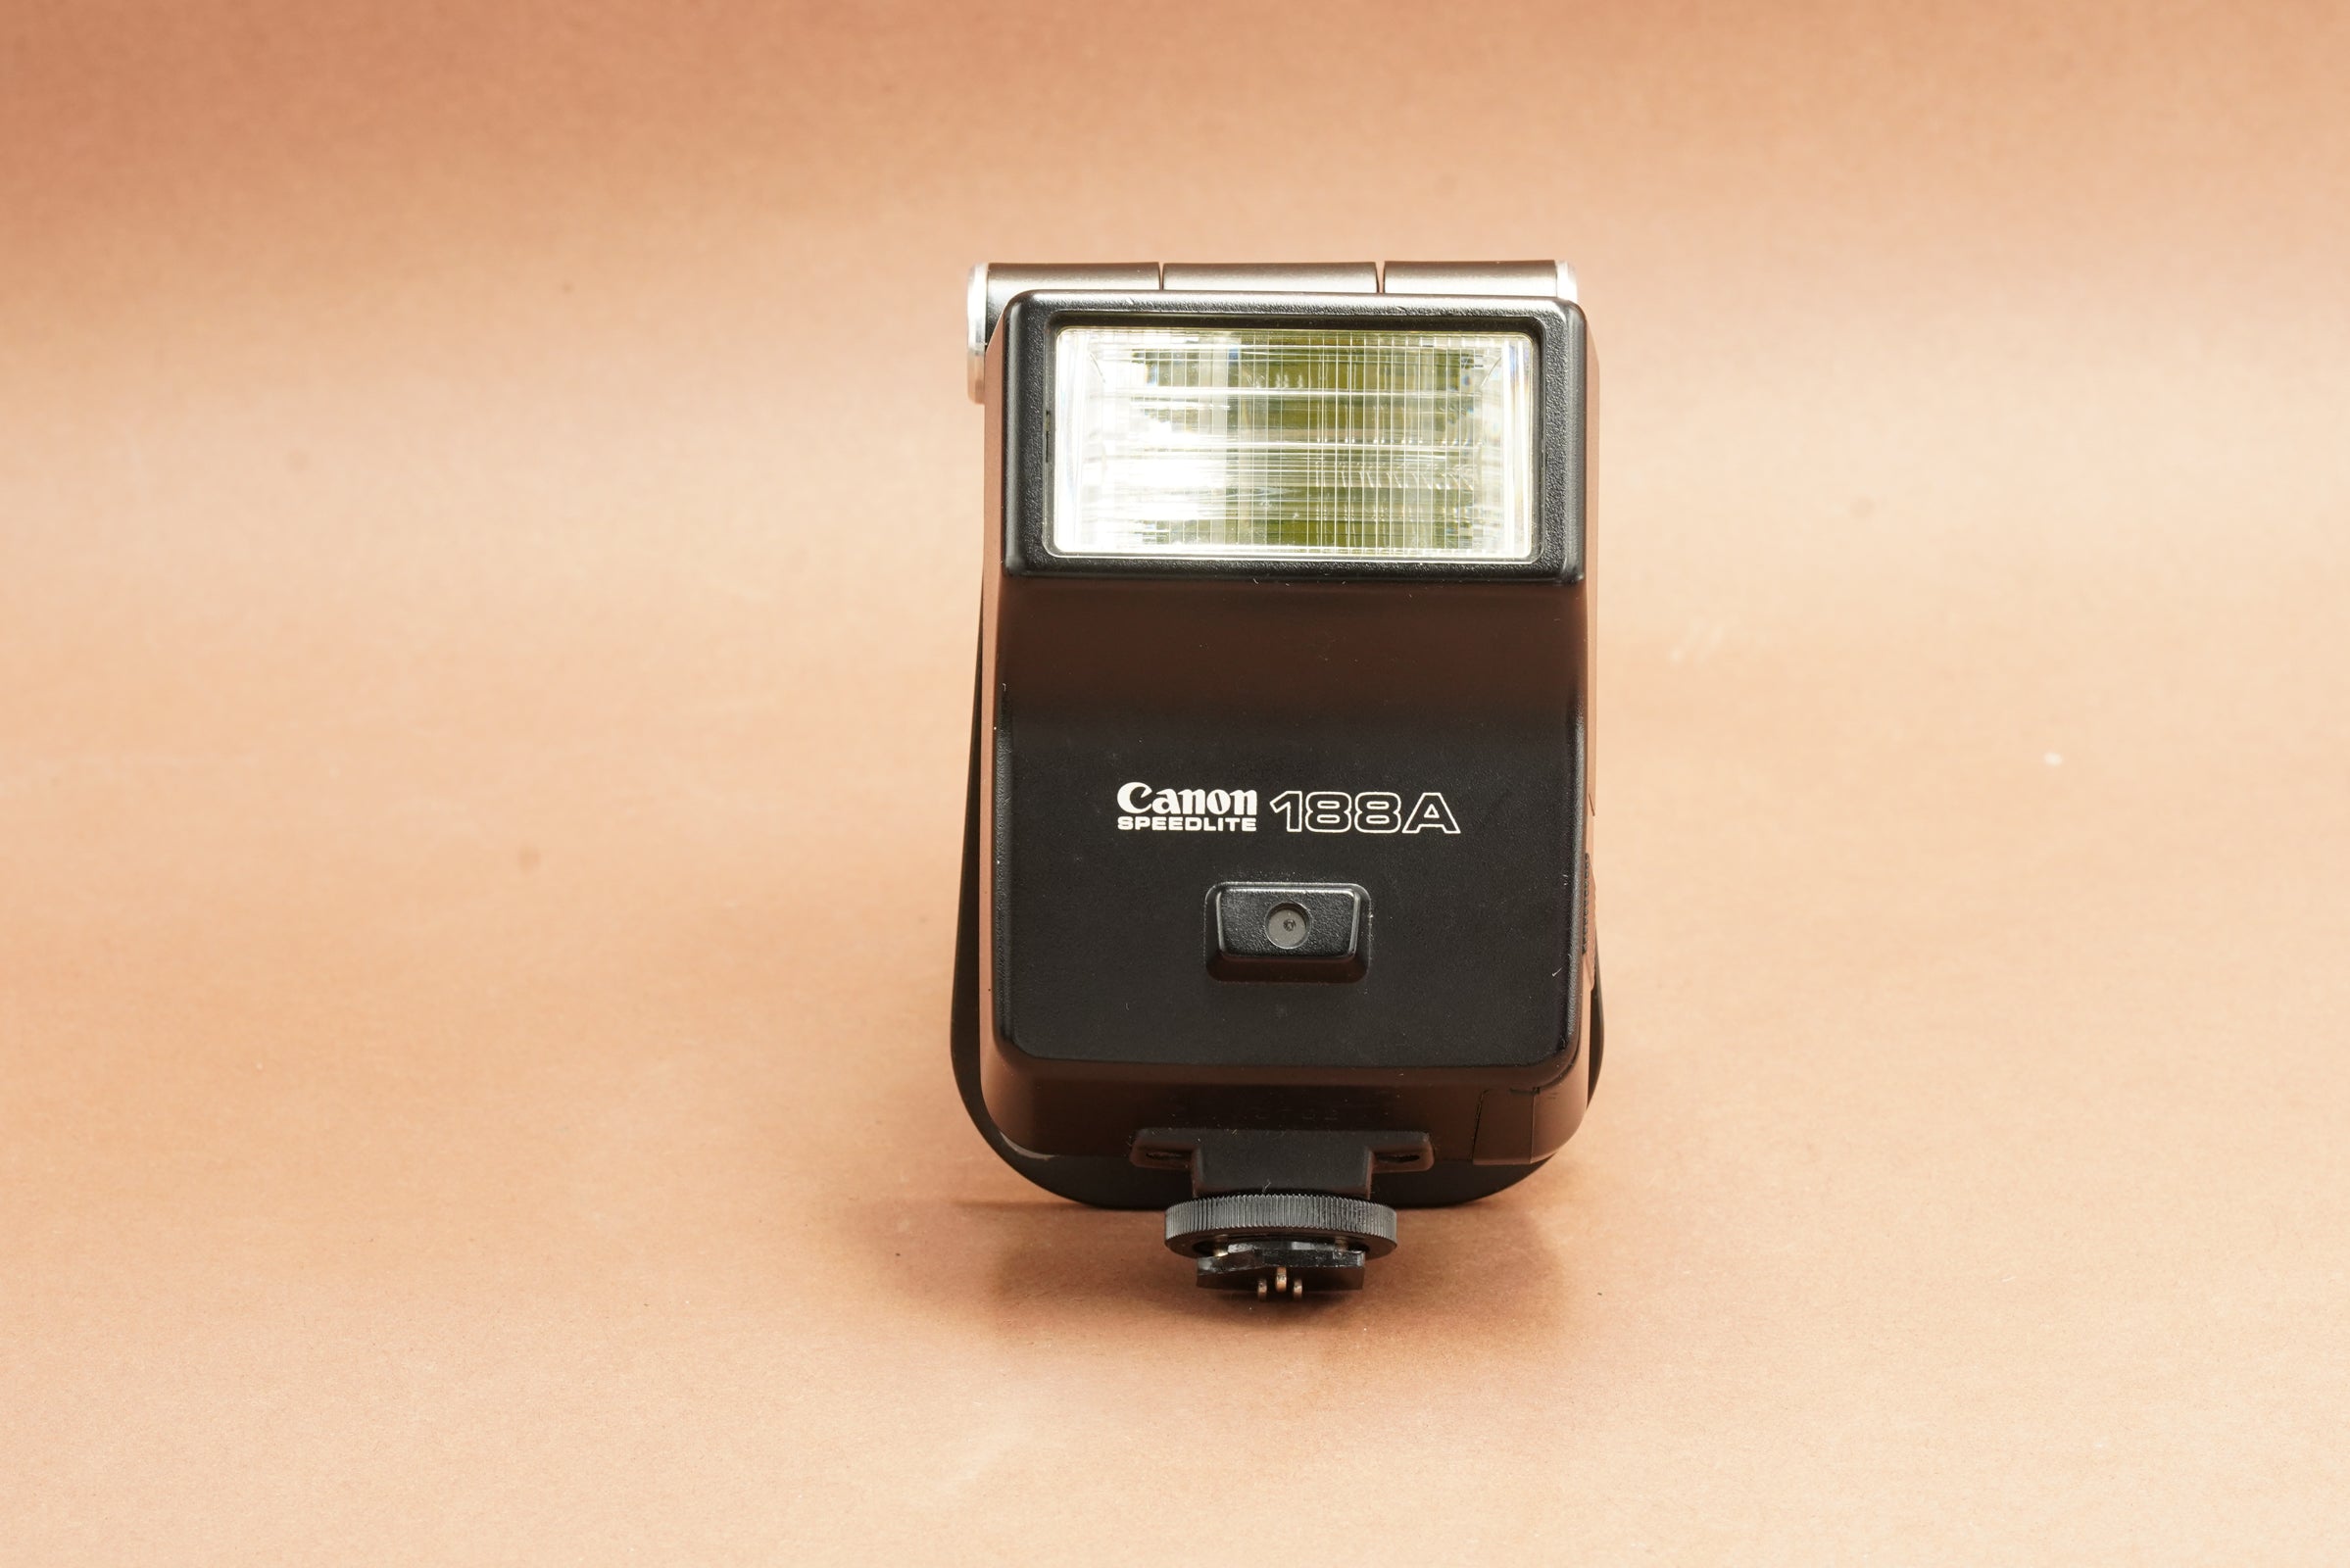 Canon Speedlite 188A Flash